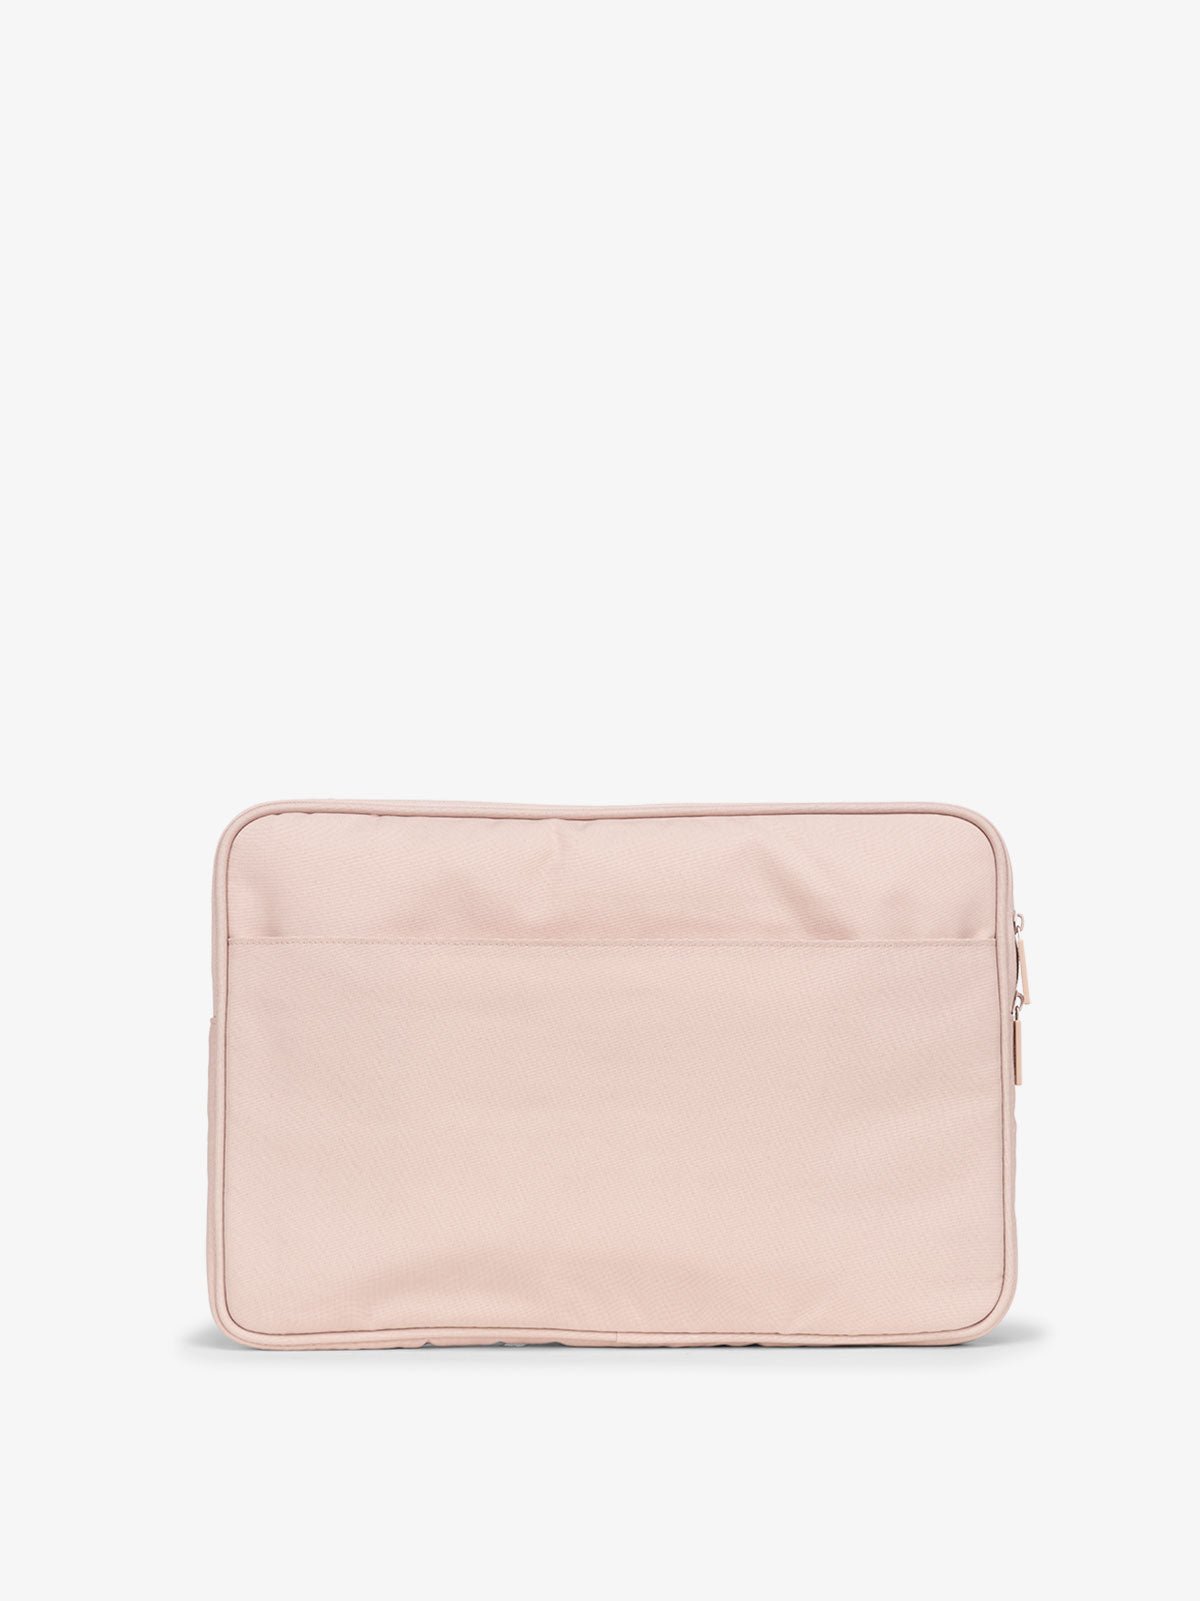 CALPAK 15-17 Inch soft Laptop case with back slip pocket in pink